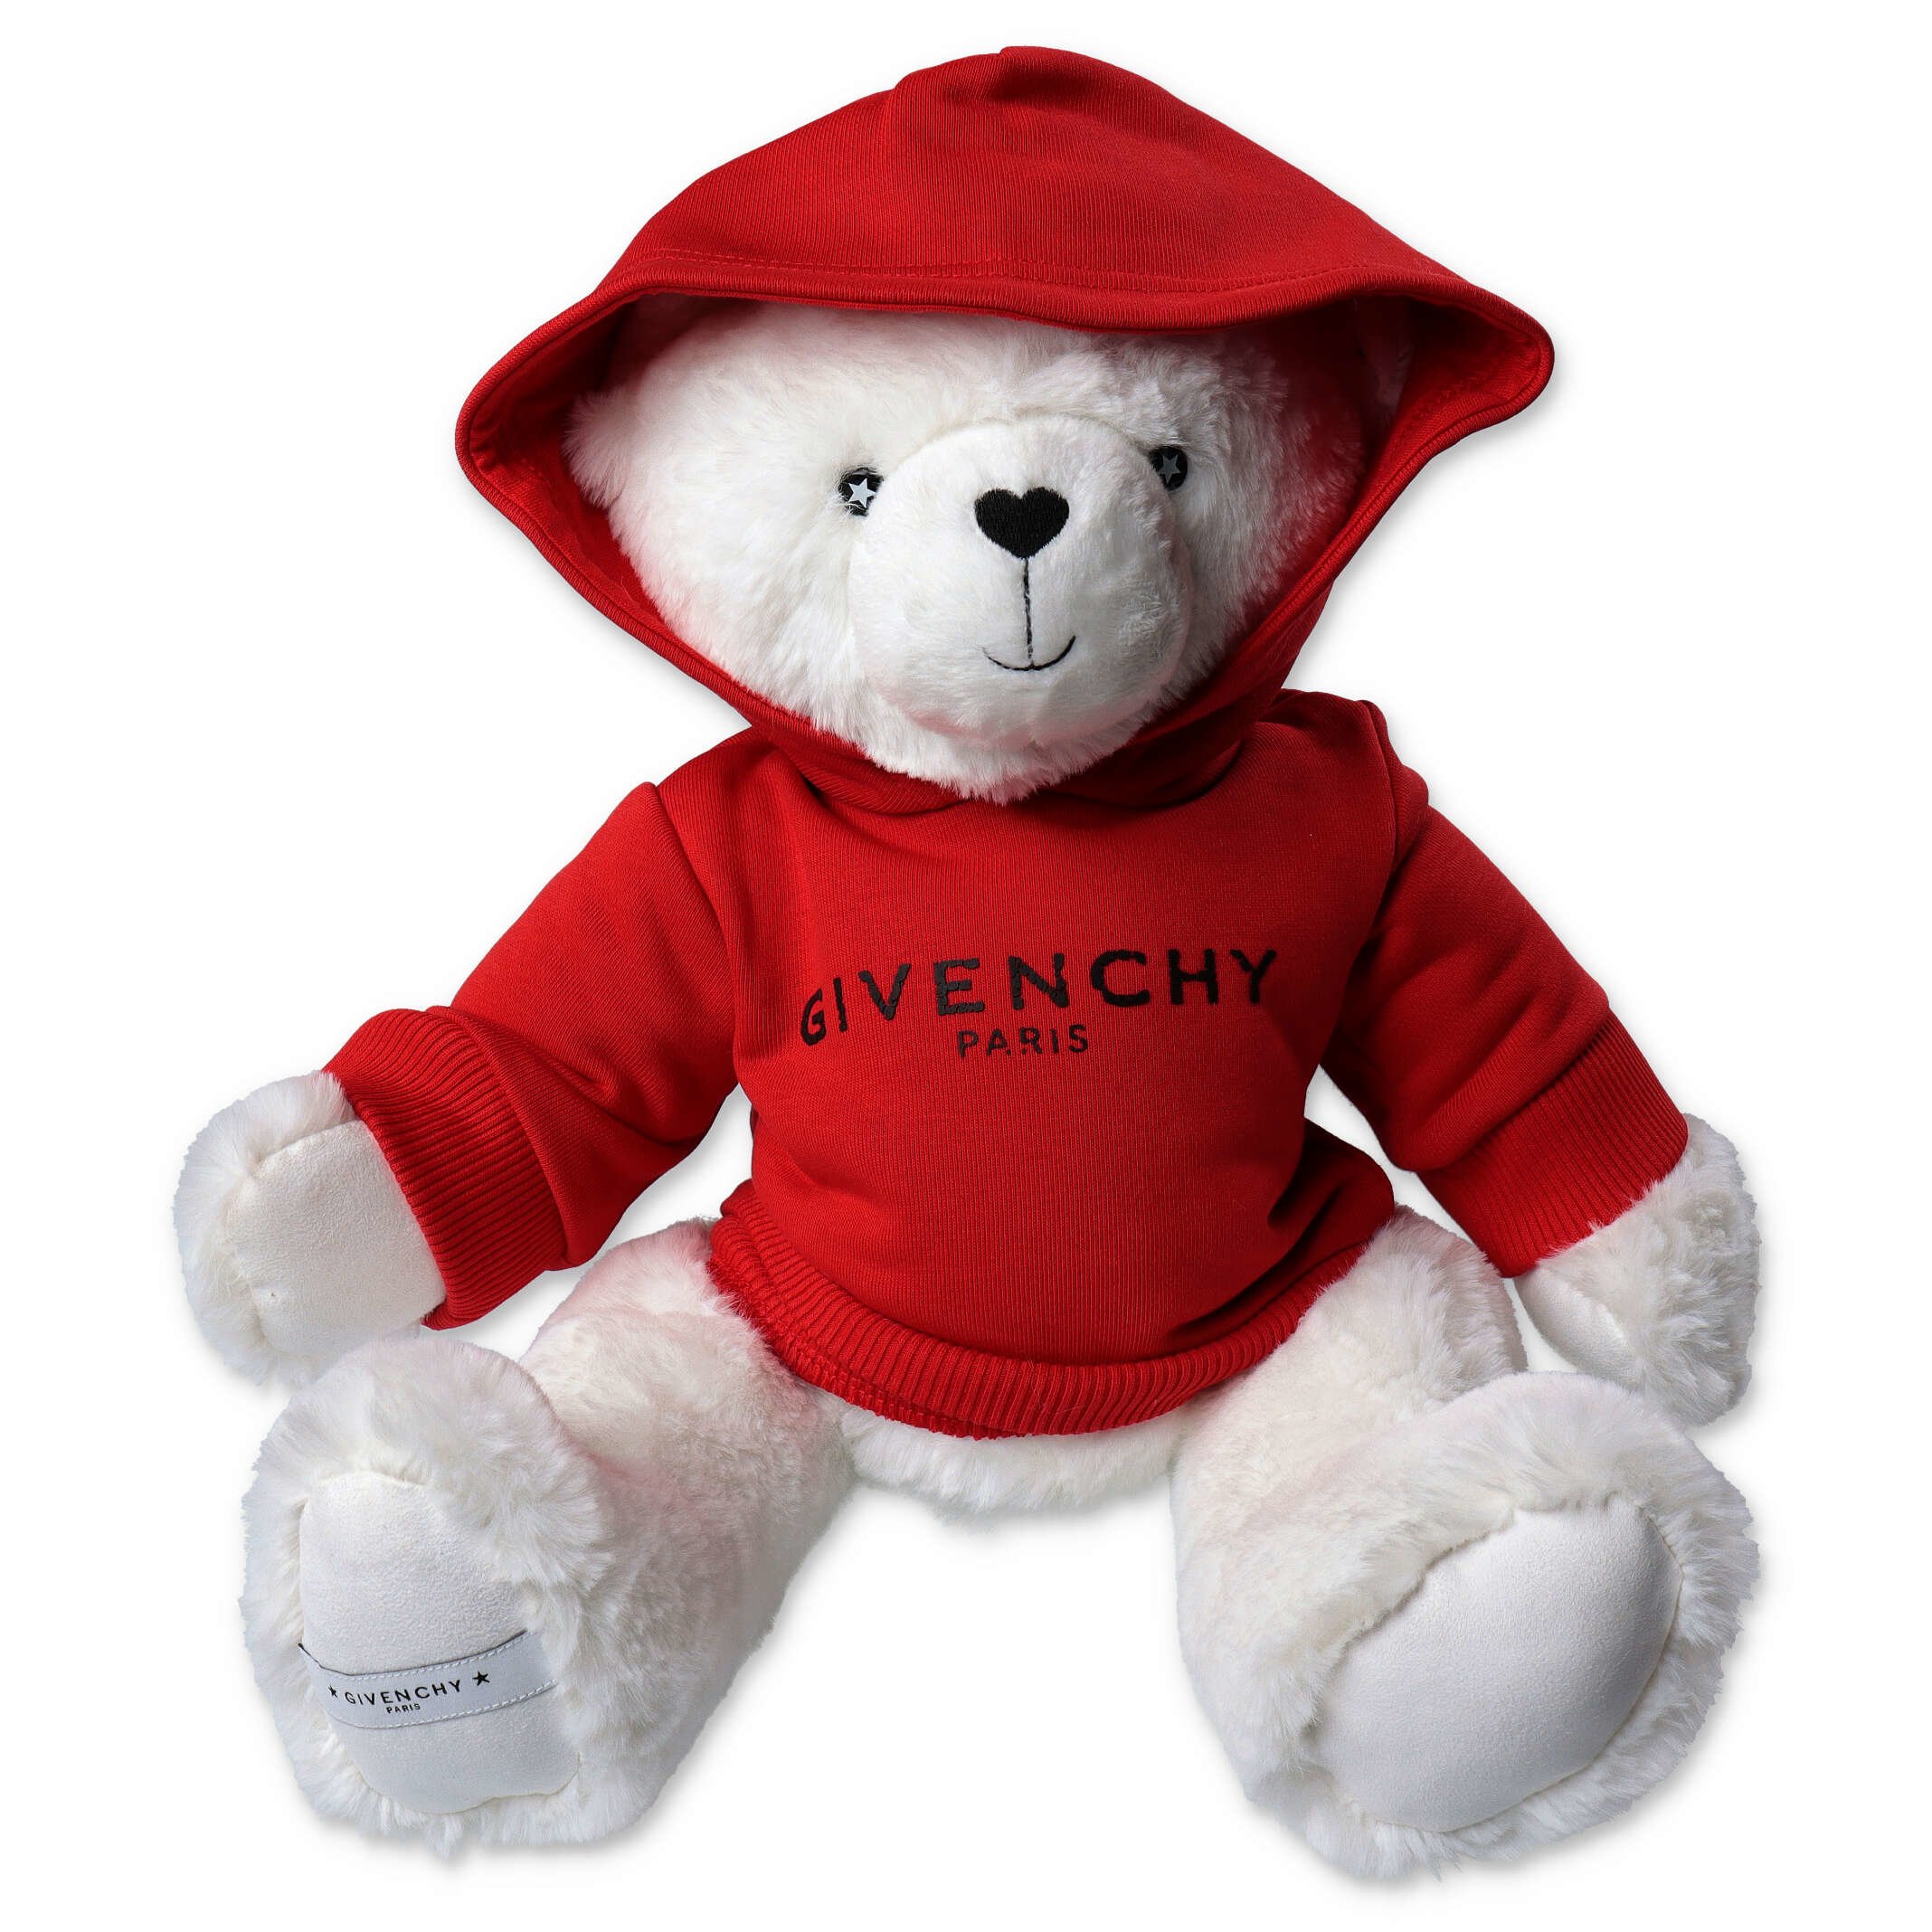 Givenchy_Teddy_Bear